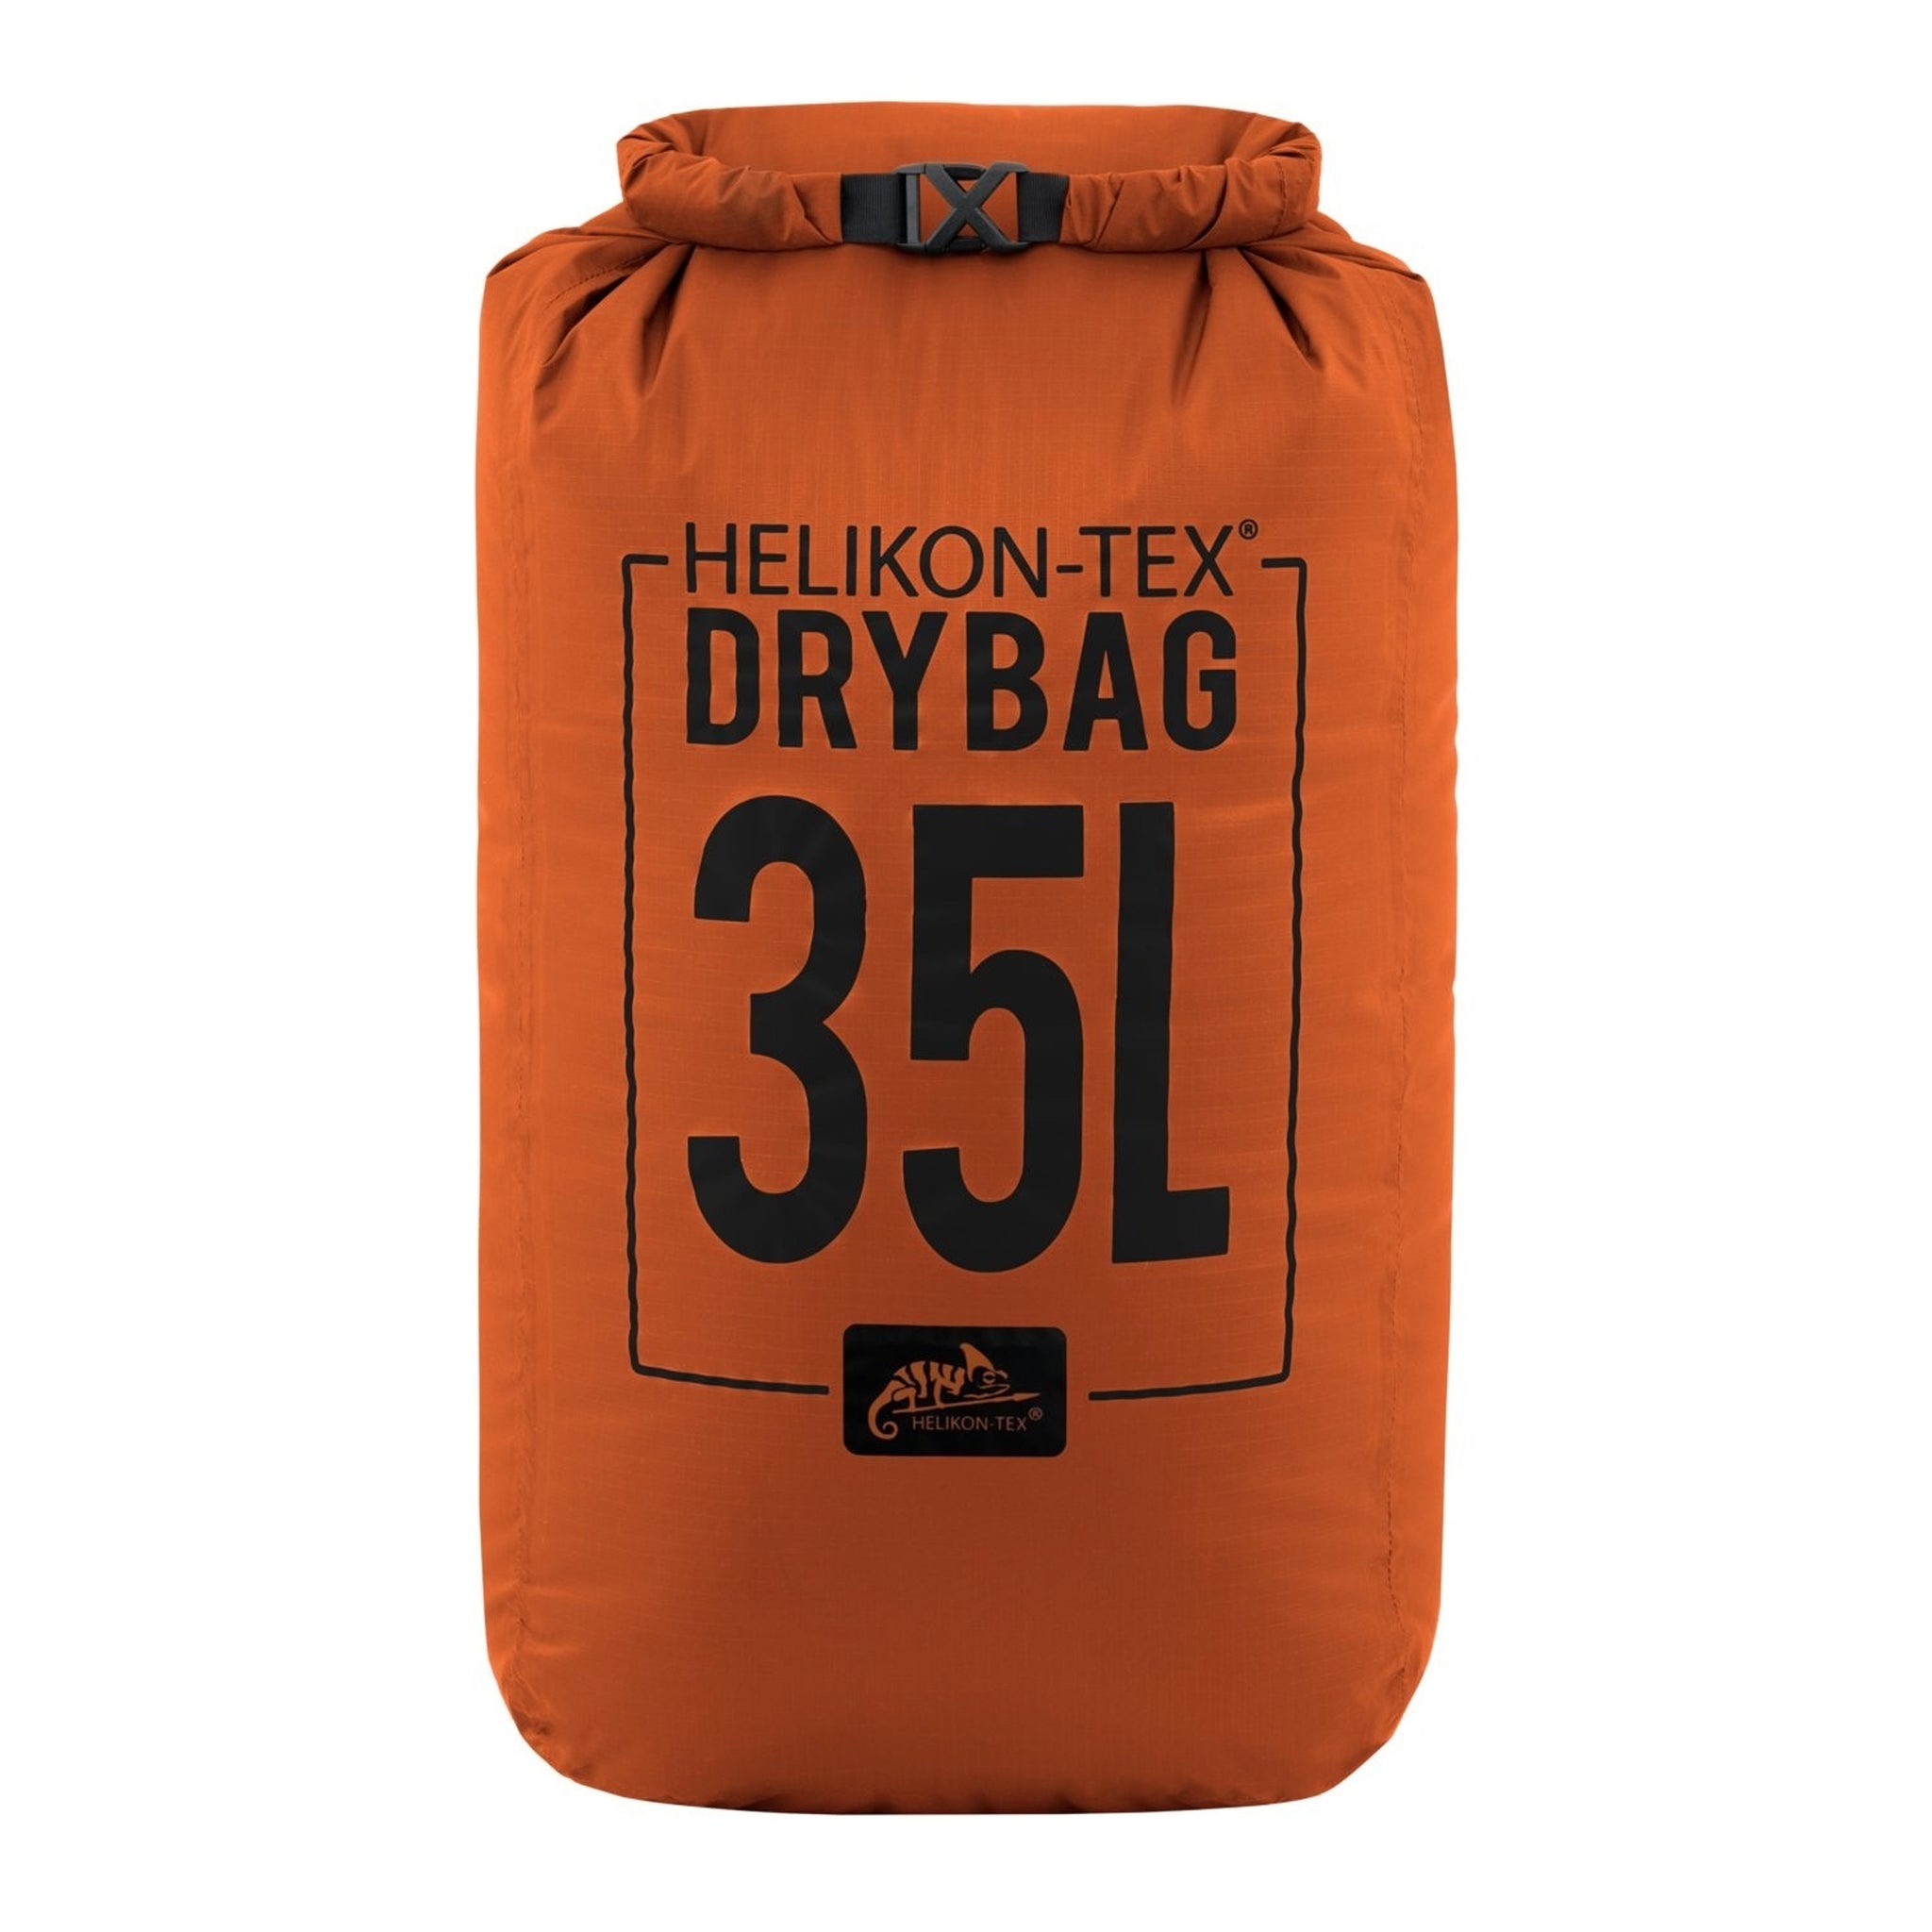 Helikon-Tex Arid Dry Sack Small 35L orange